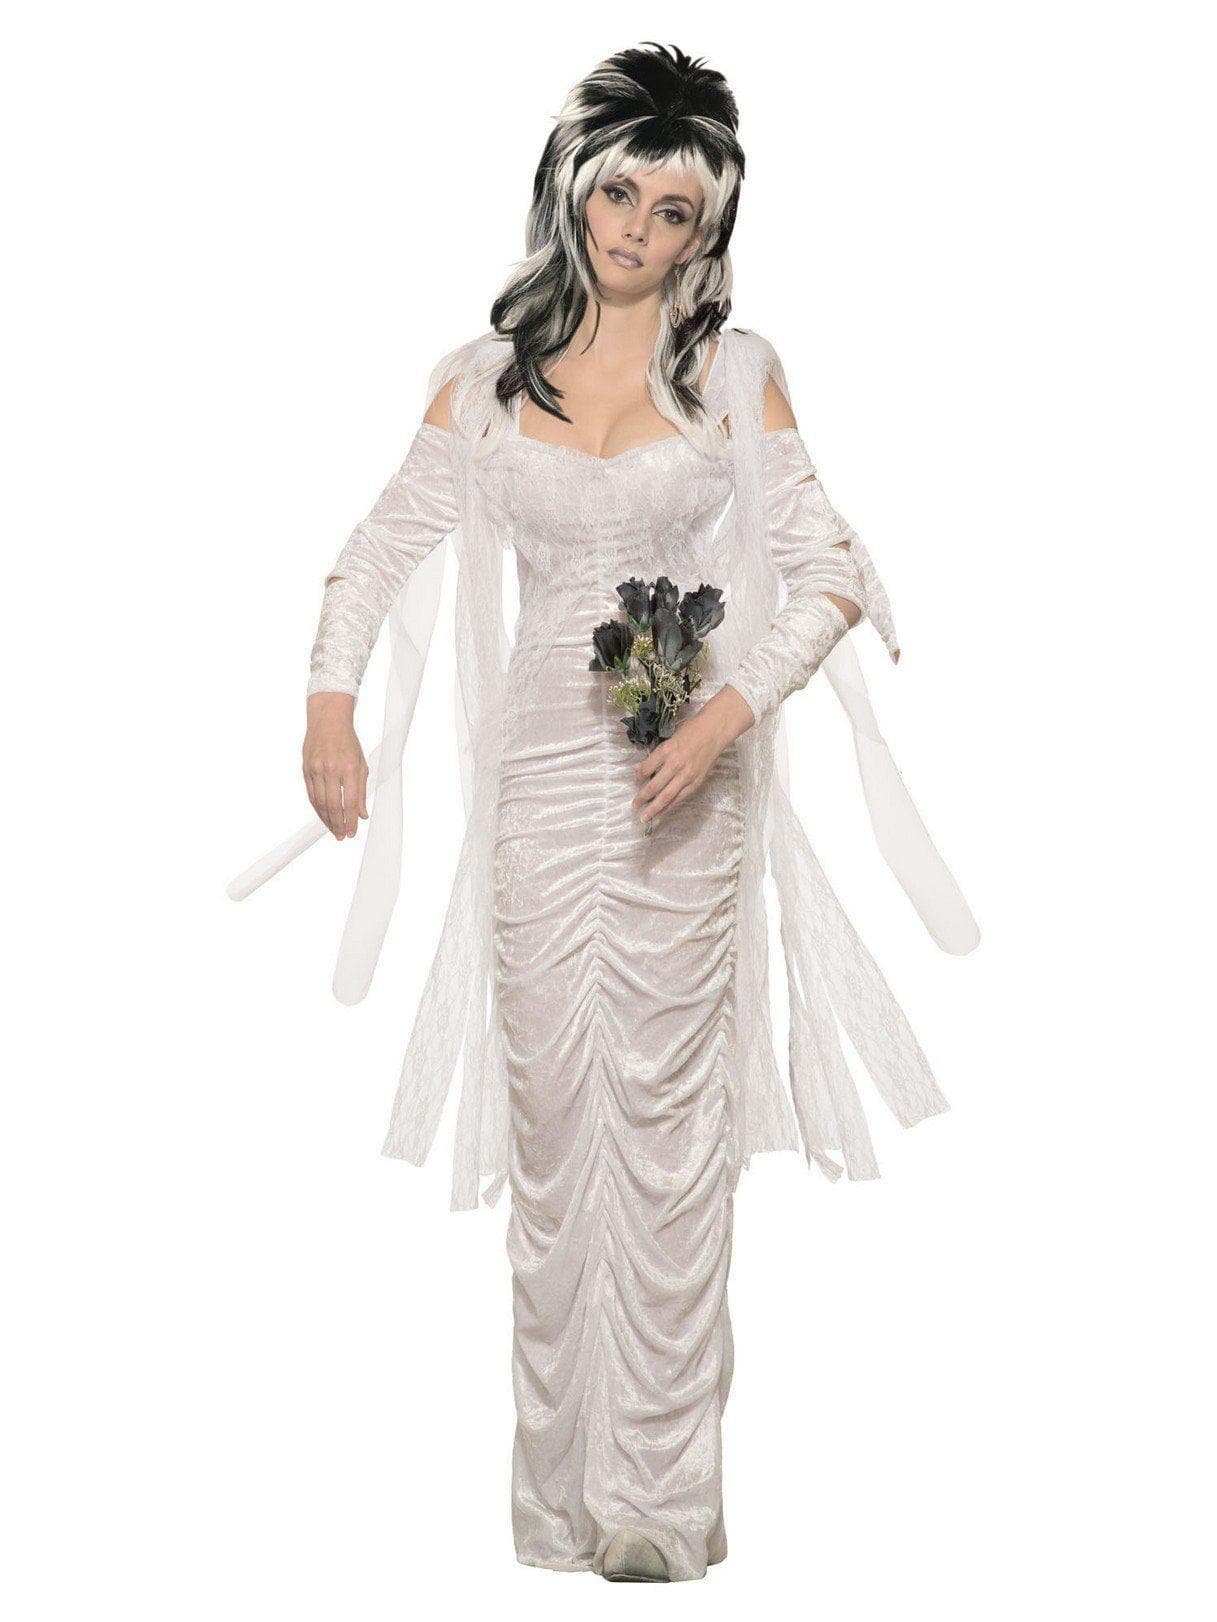 Adult Haunted Bride Costume - costumes.com